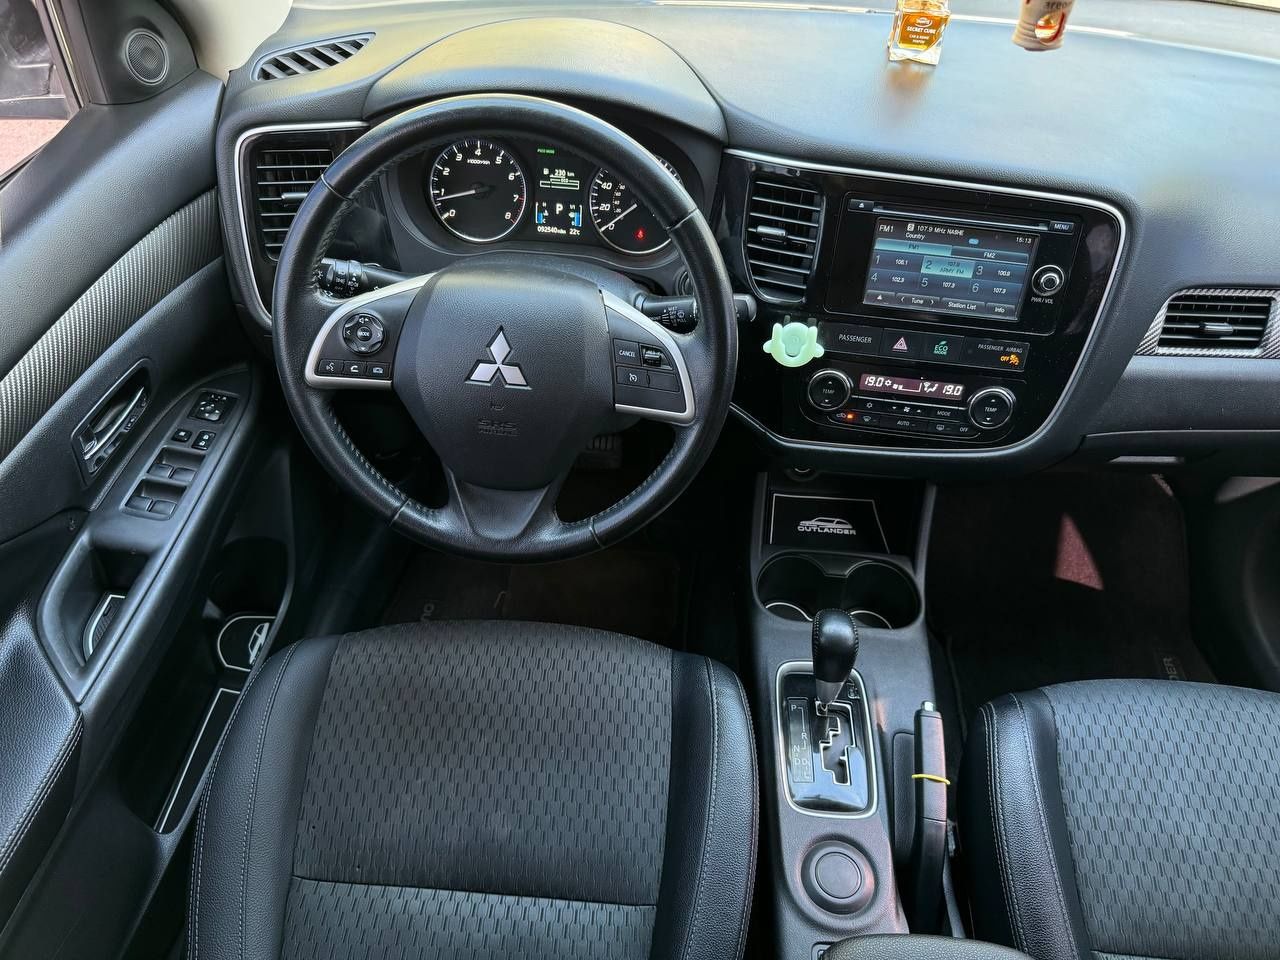 Mitsubishi Outlander 2014 року, 2.4 бензин , автомат передній привід,